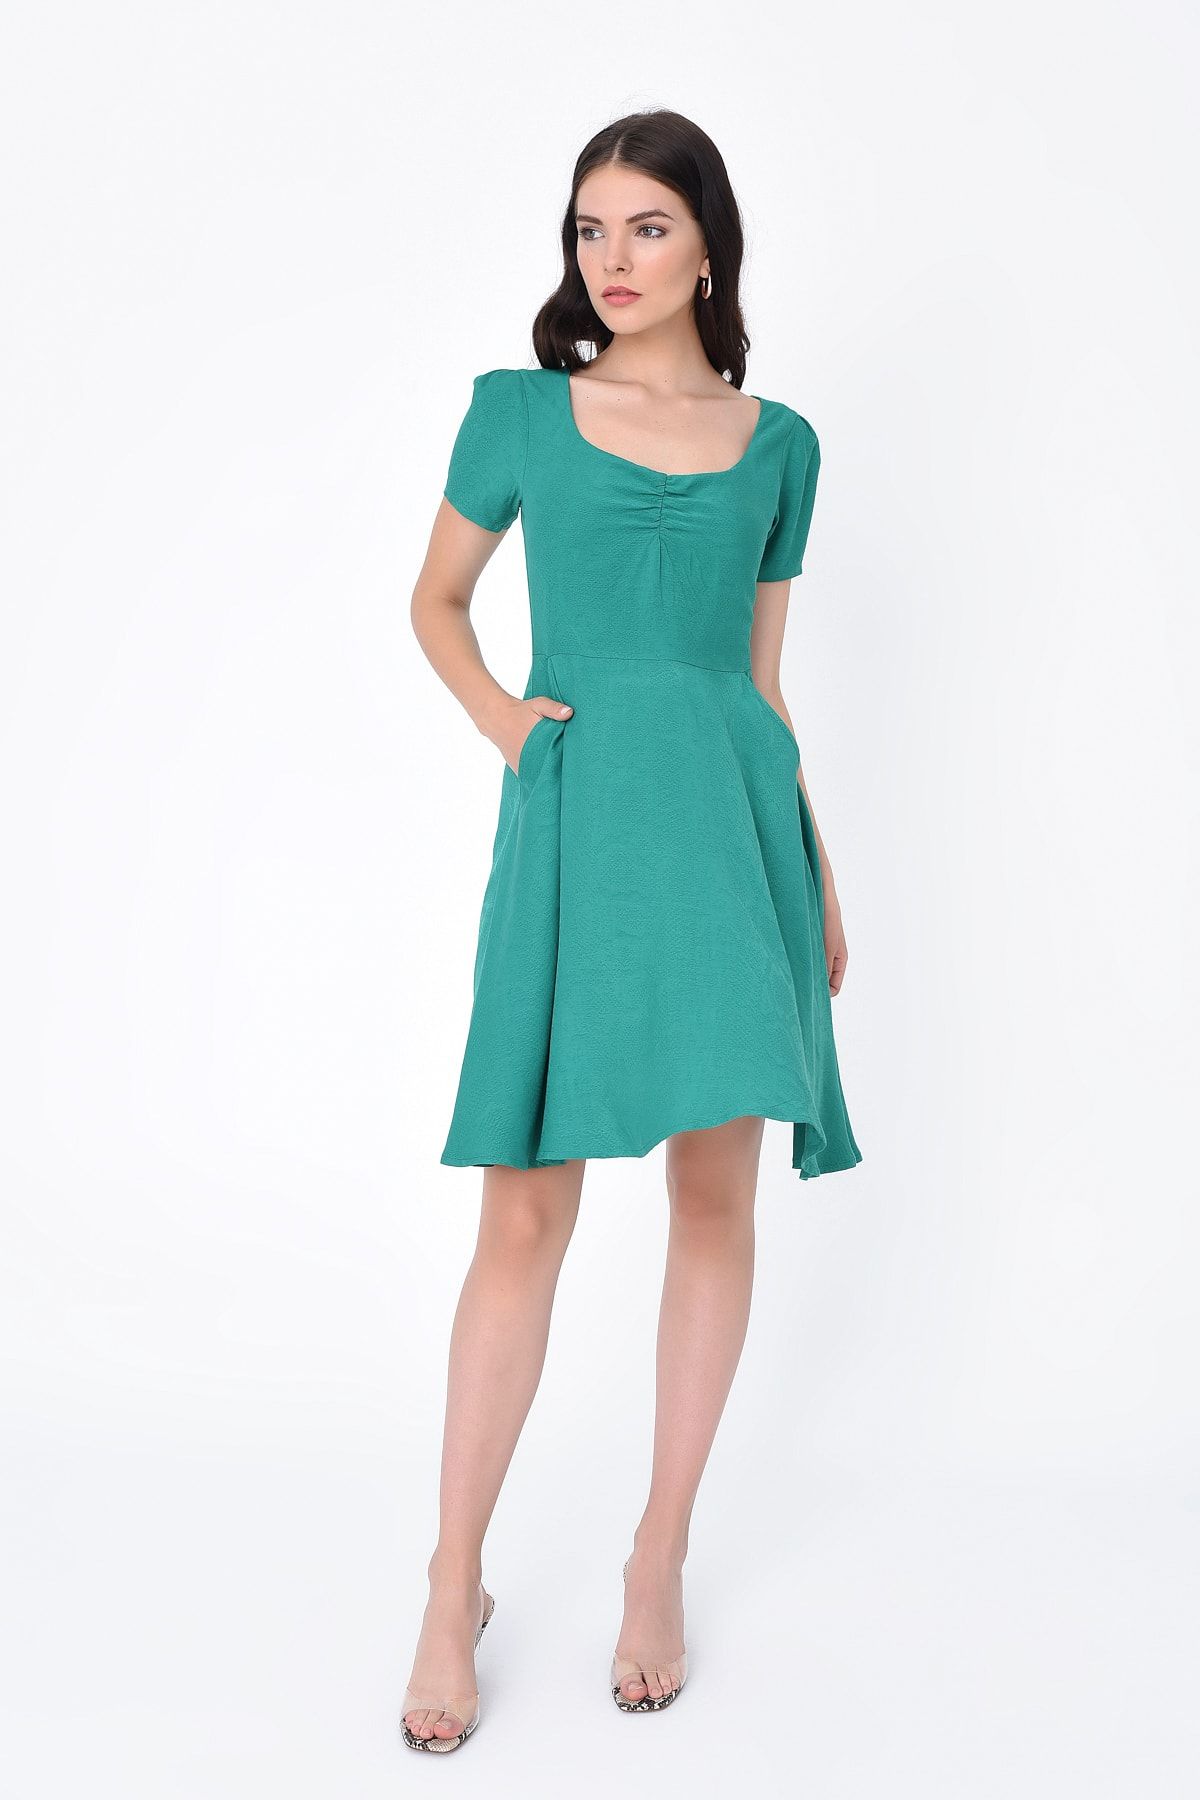 Hanna's Kadın Yeşil Büzgülü Cepli Kısa Kollu Elbise